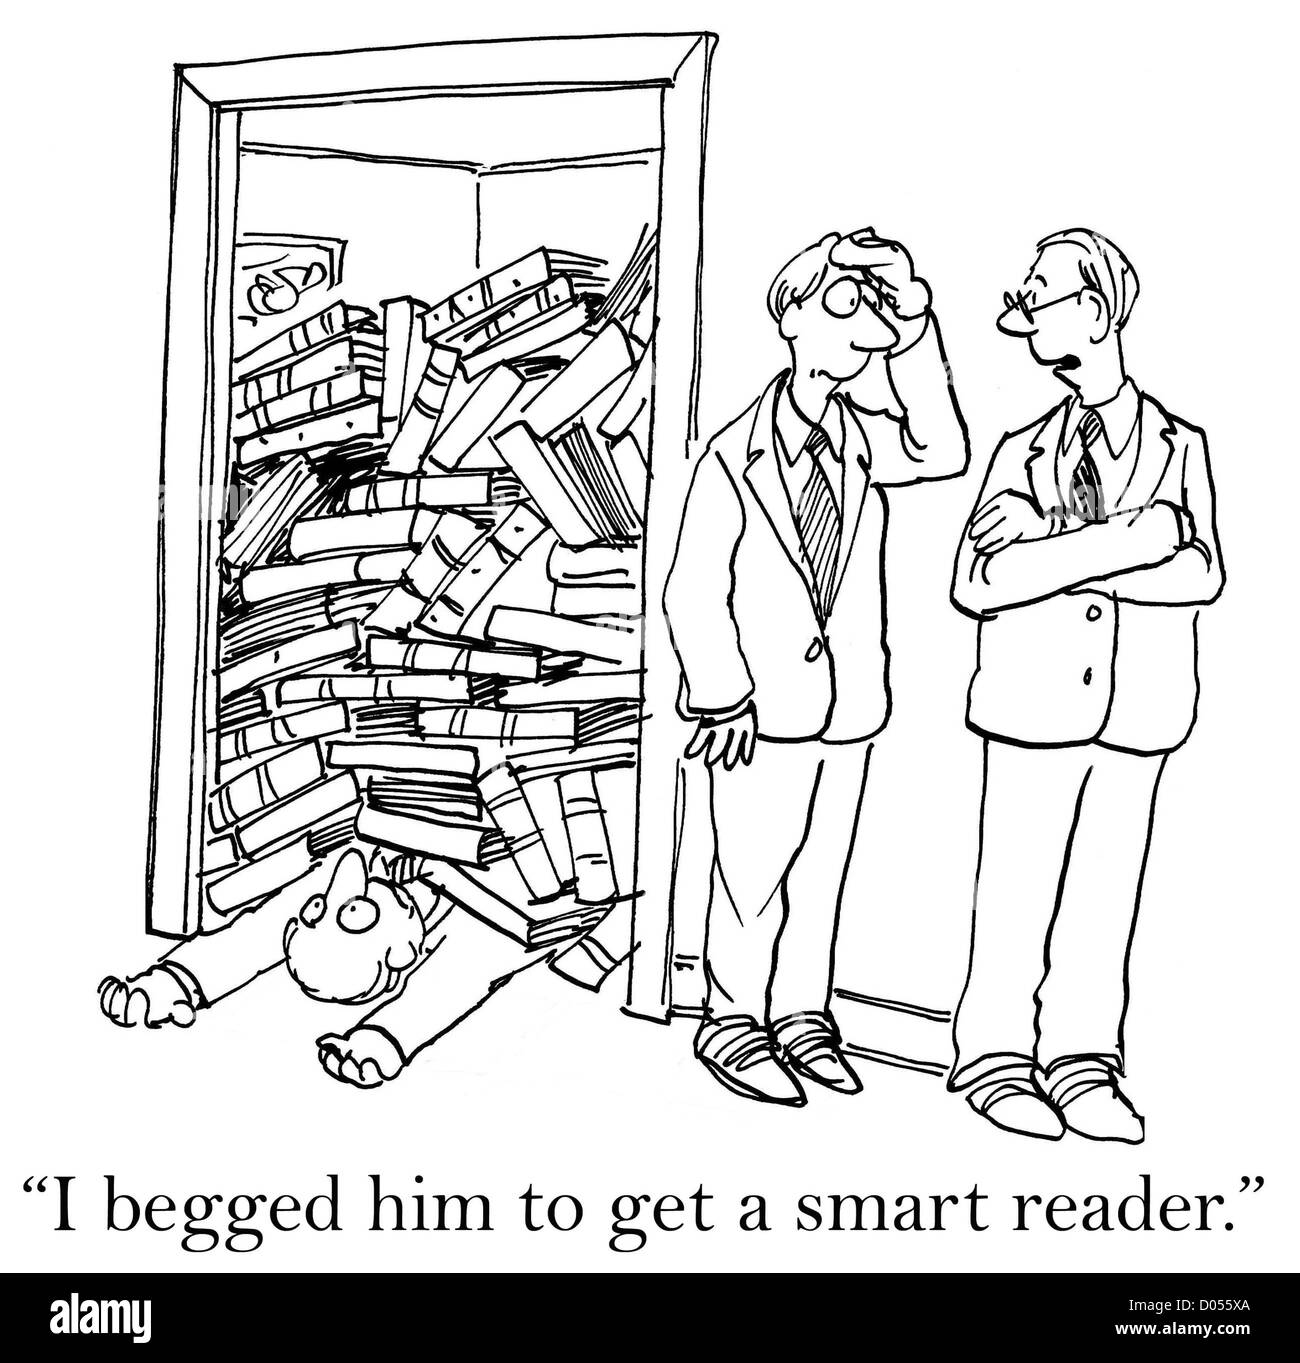 "Ich bat ihn um ein smart Reader zu erhalten." Stockfoto